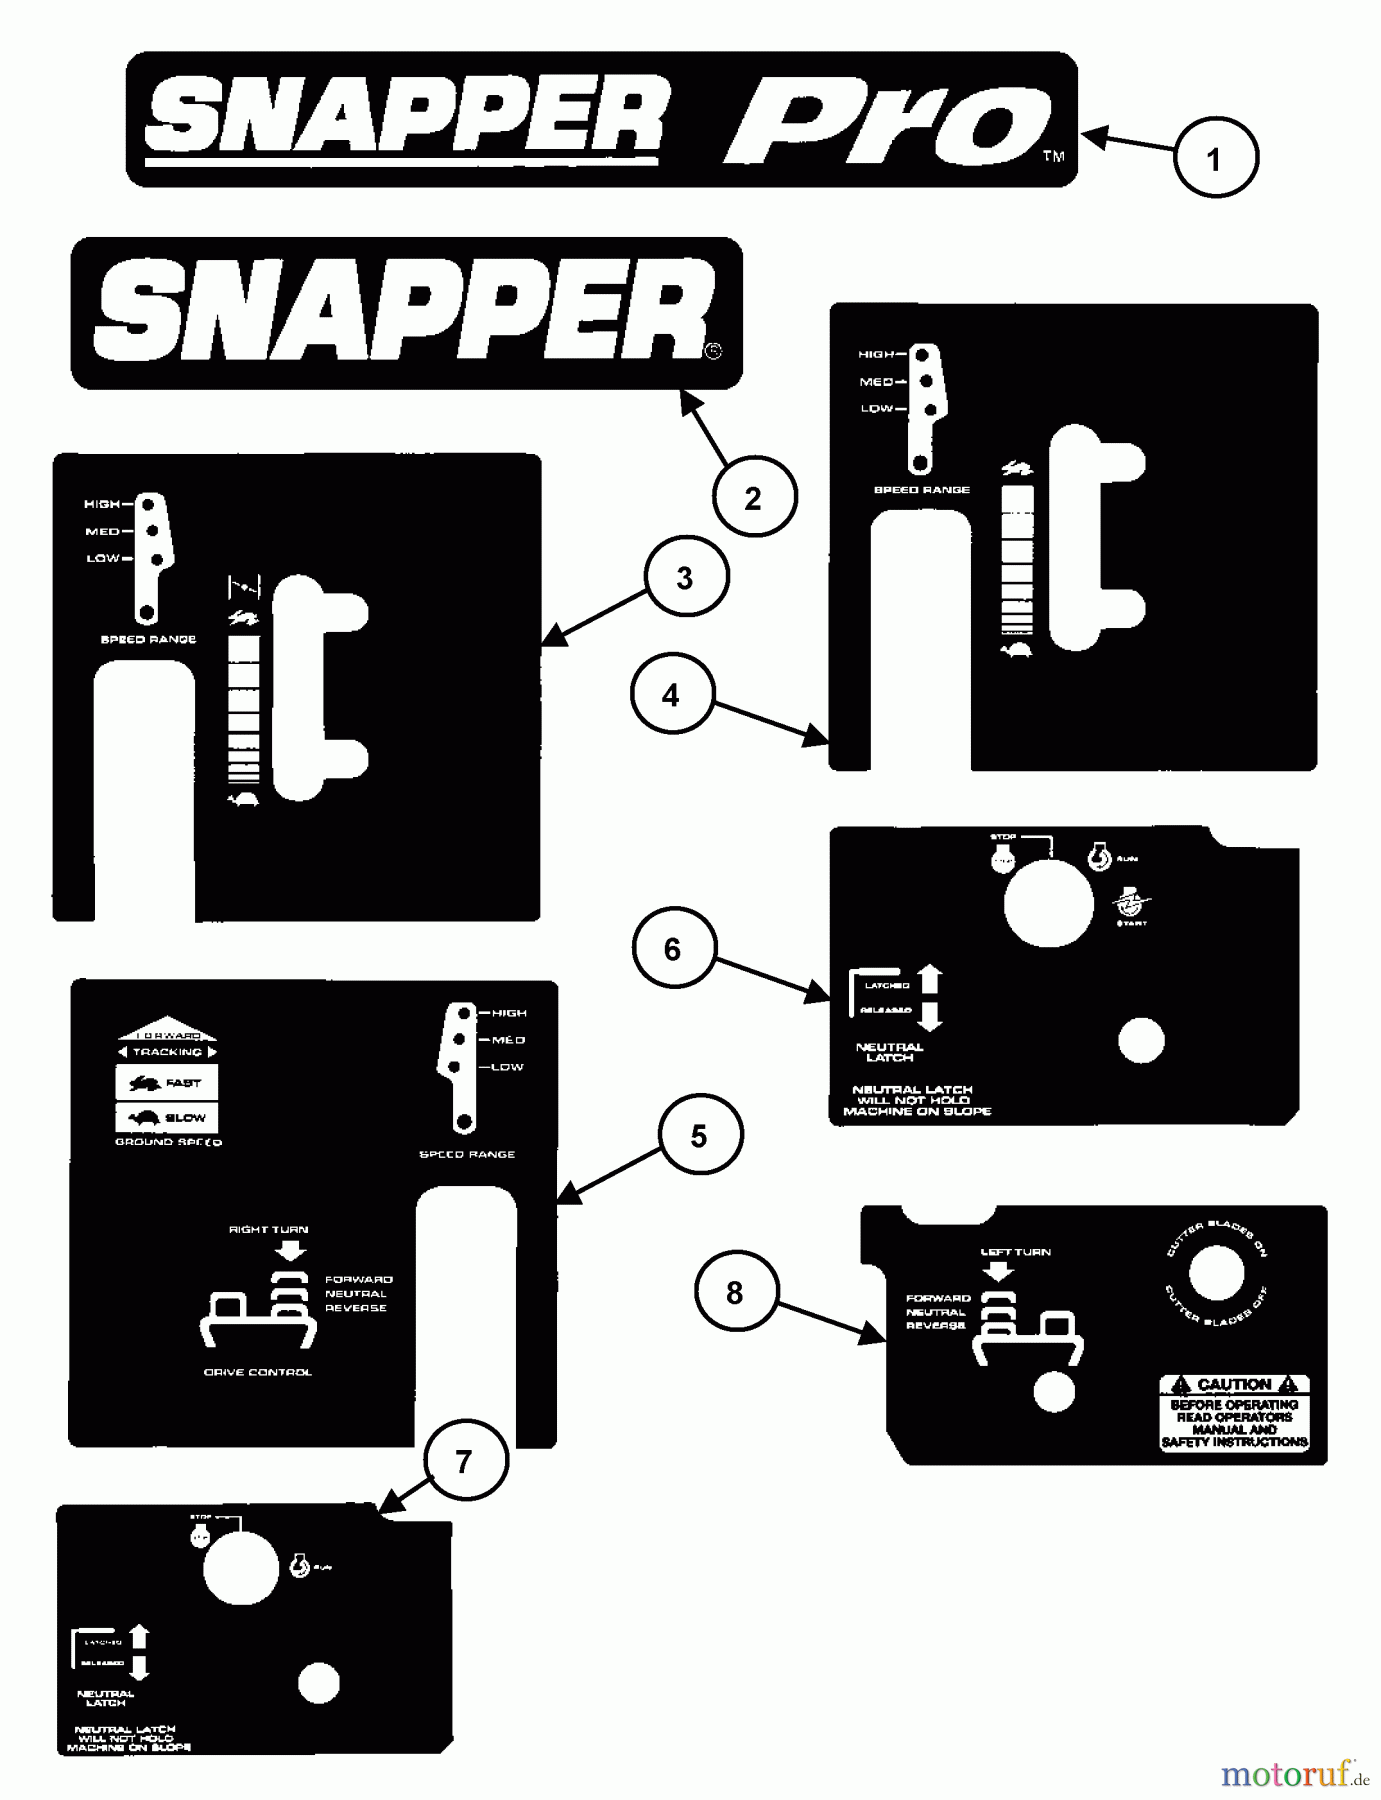  Snapper Rasenmäher für Großflächen SPLH140KH (80898) - Snapper Wide-Area Walk-Behind Mower, 14 HP, Hydro Drive, Loop Handle, Series 0 Decals (Part 2)